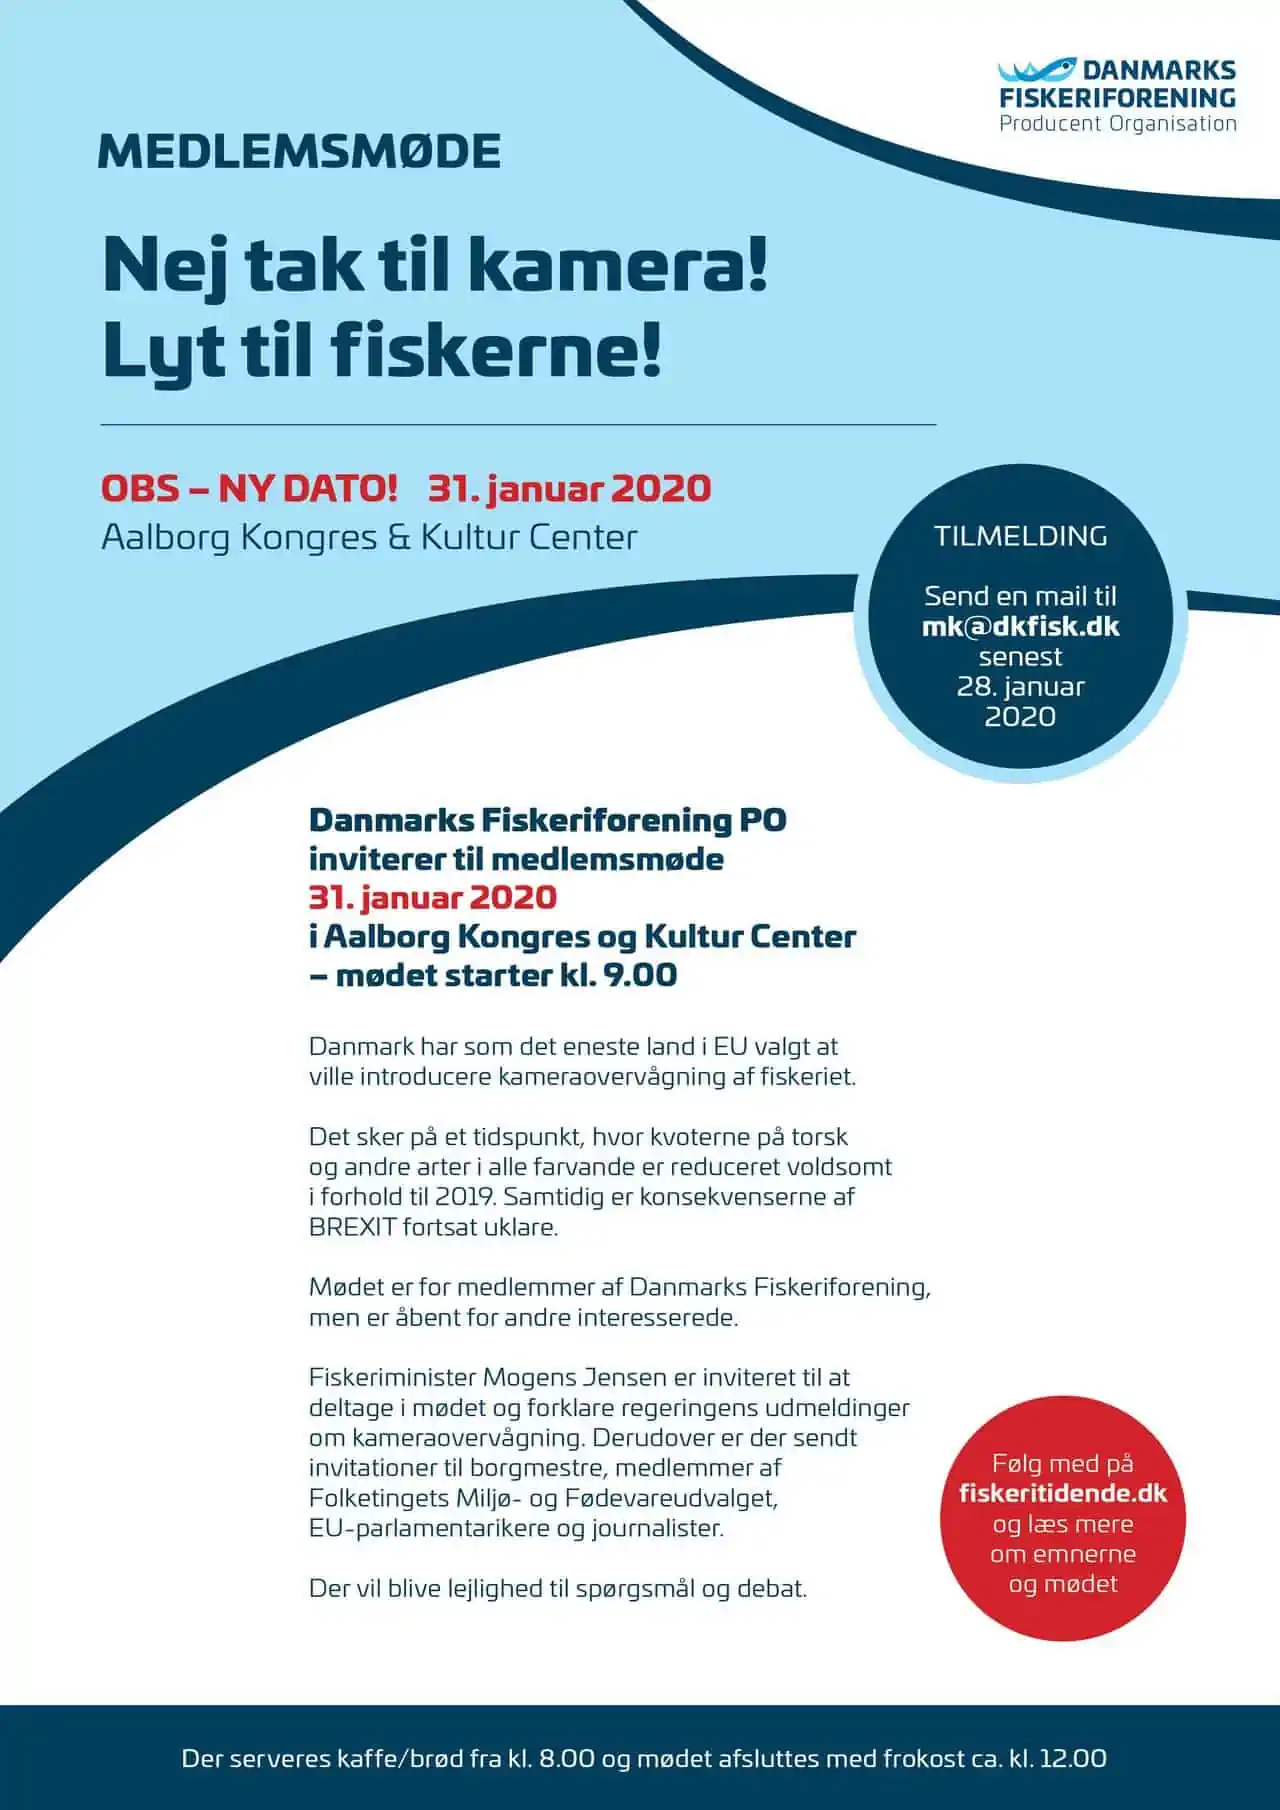 DFPO Medlemsmøde fredag den 31. januar 2020 i Aalborg